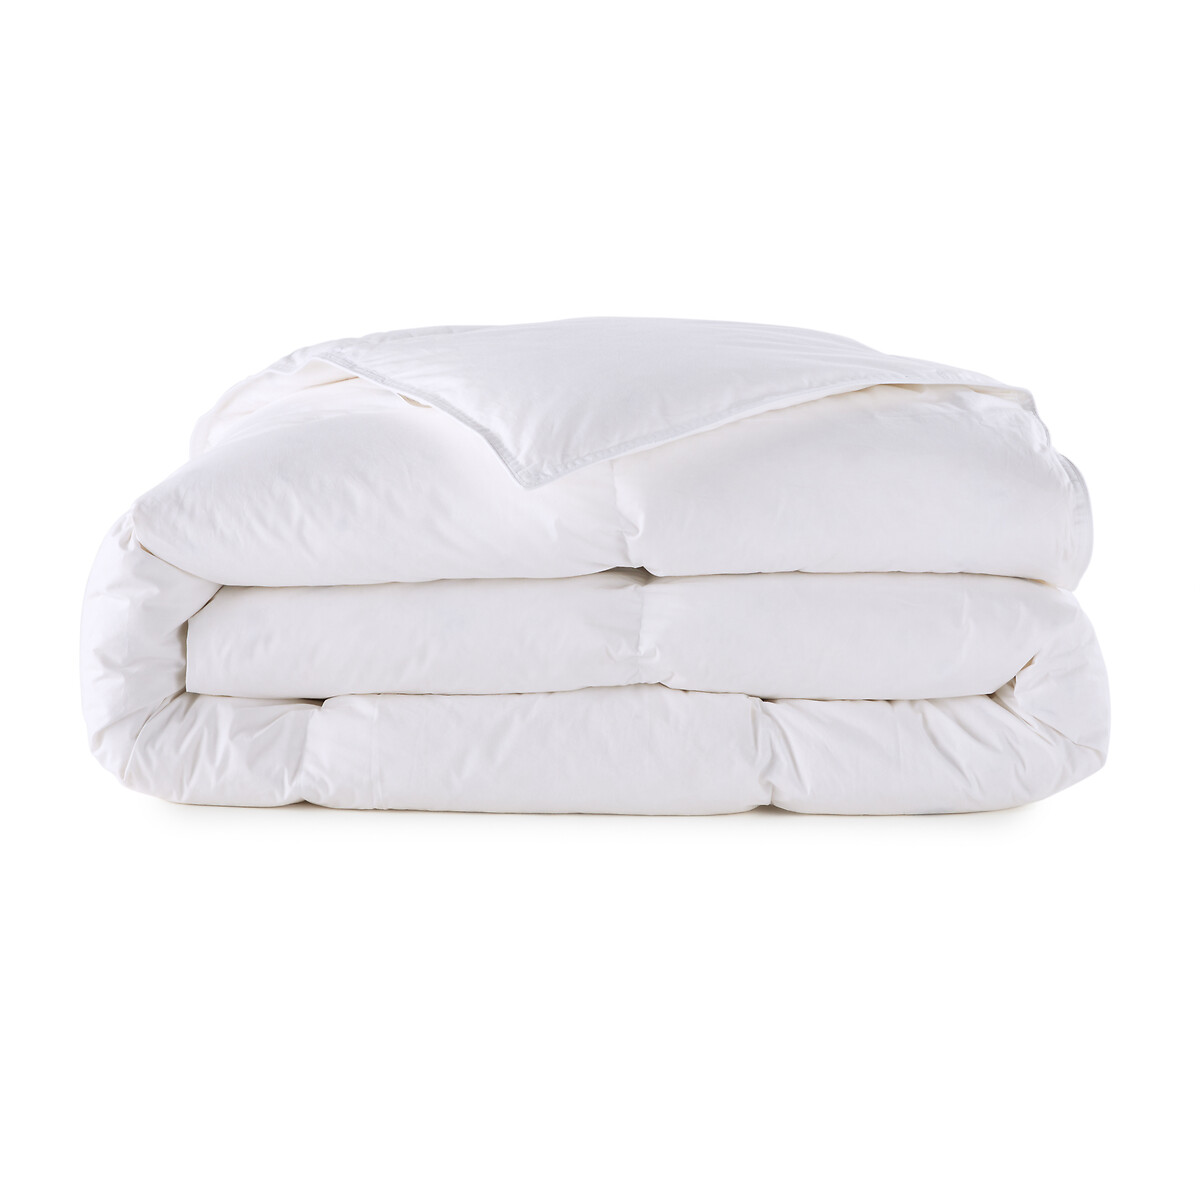 Одеяло натуральное  160 x 210 см белый LaRedoute, размер 160 x 210 см - фото 2